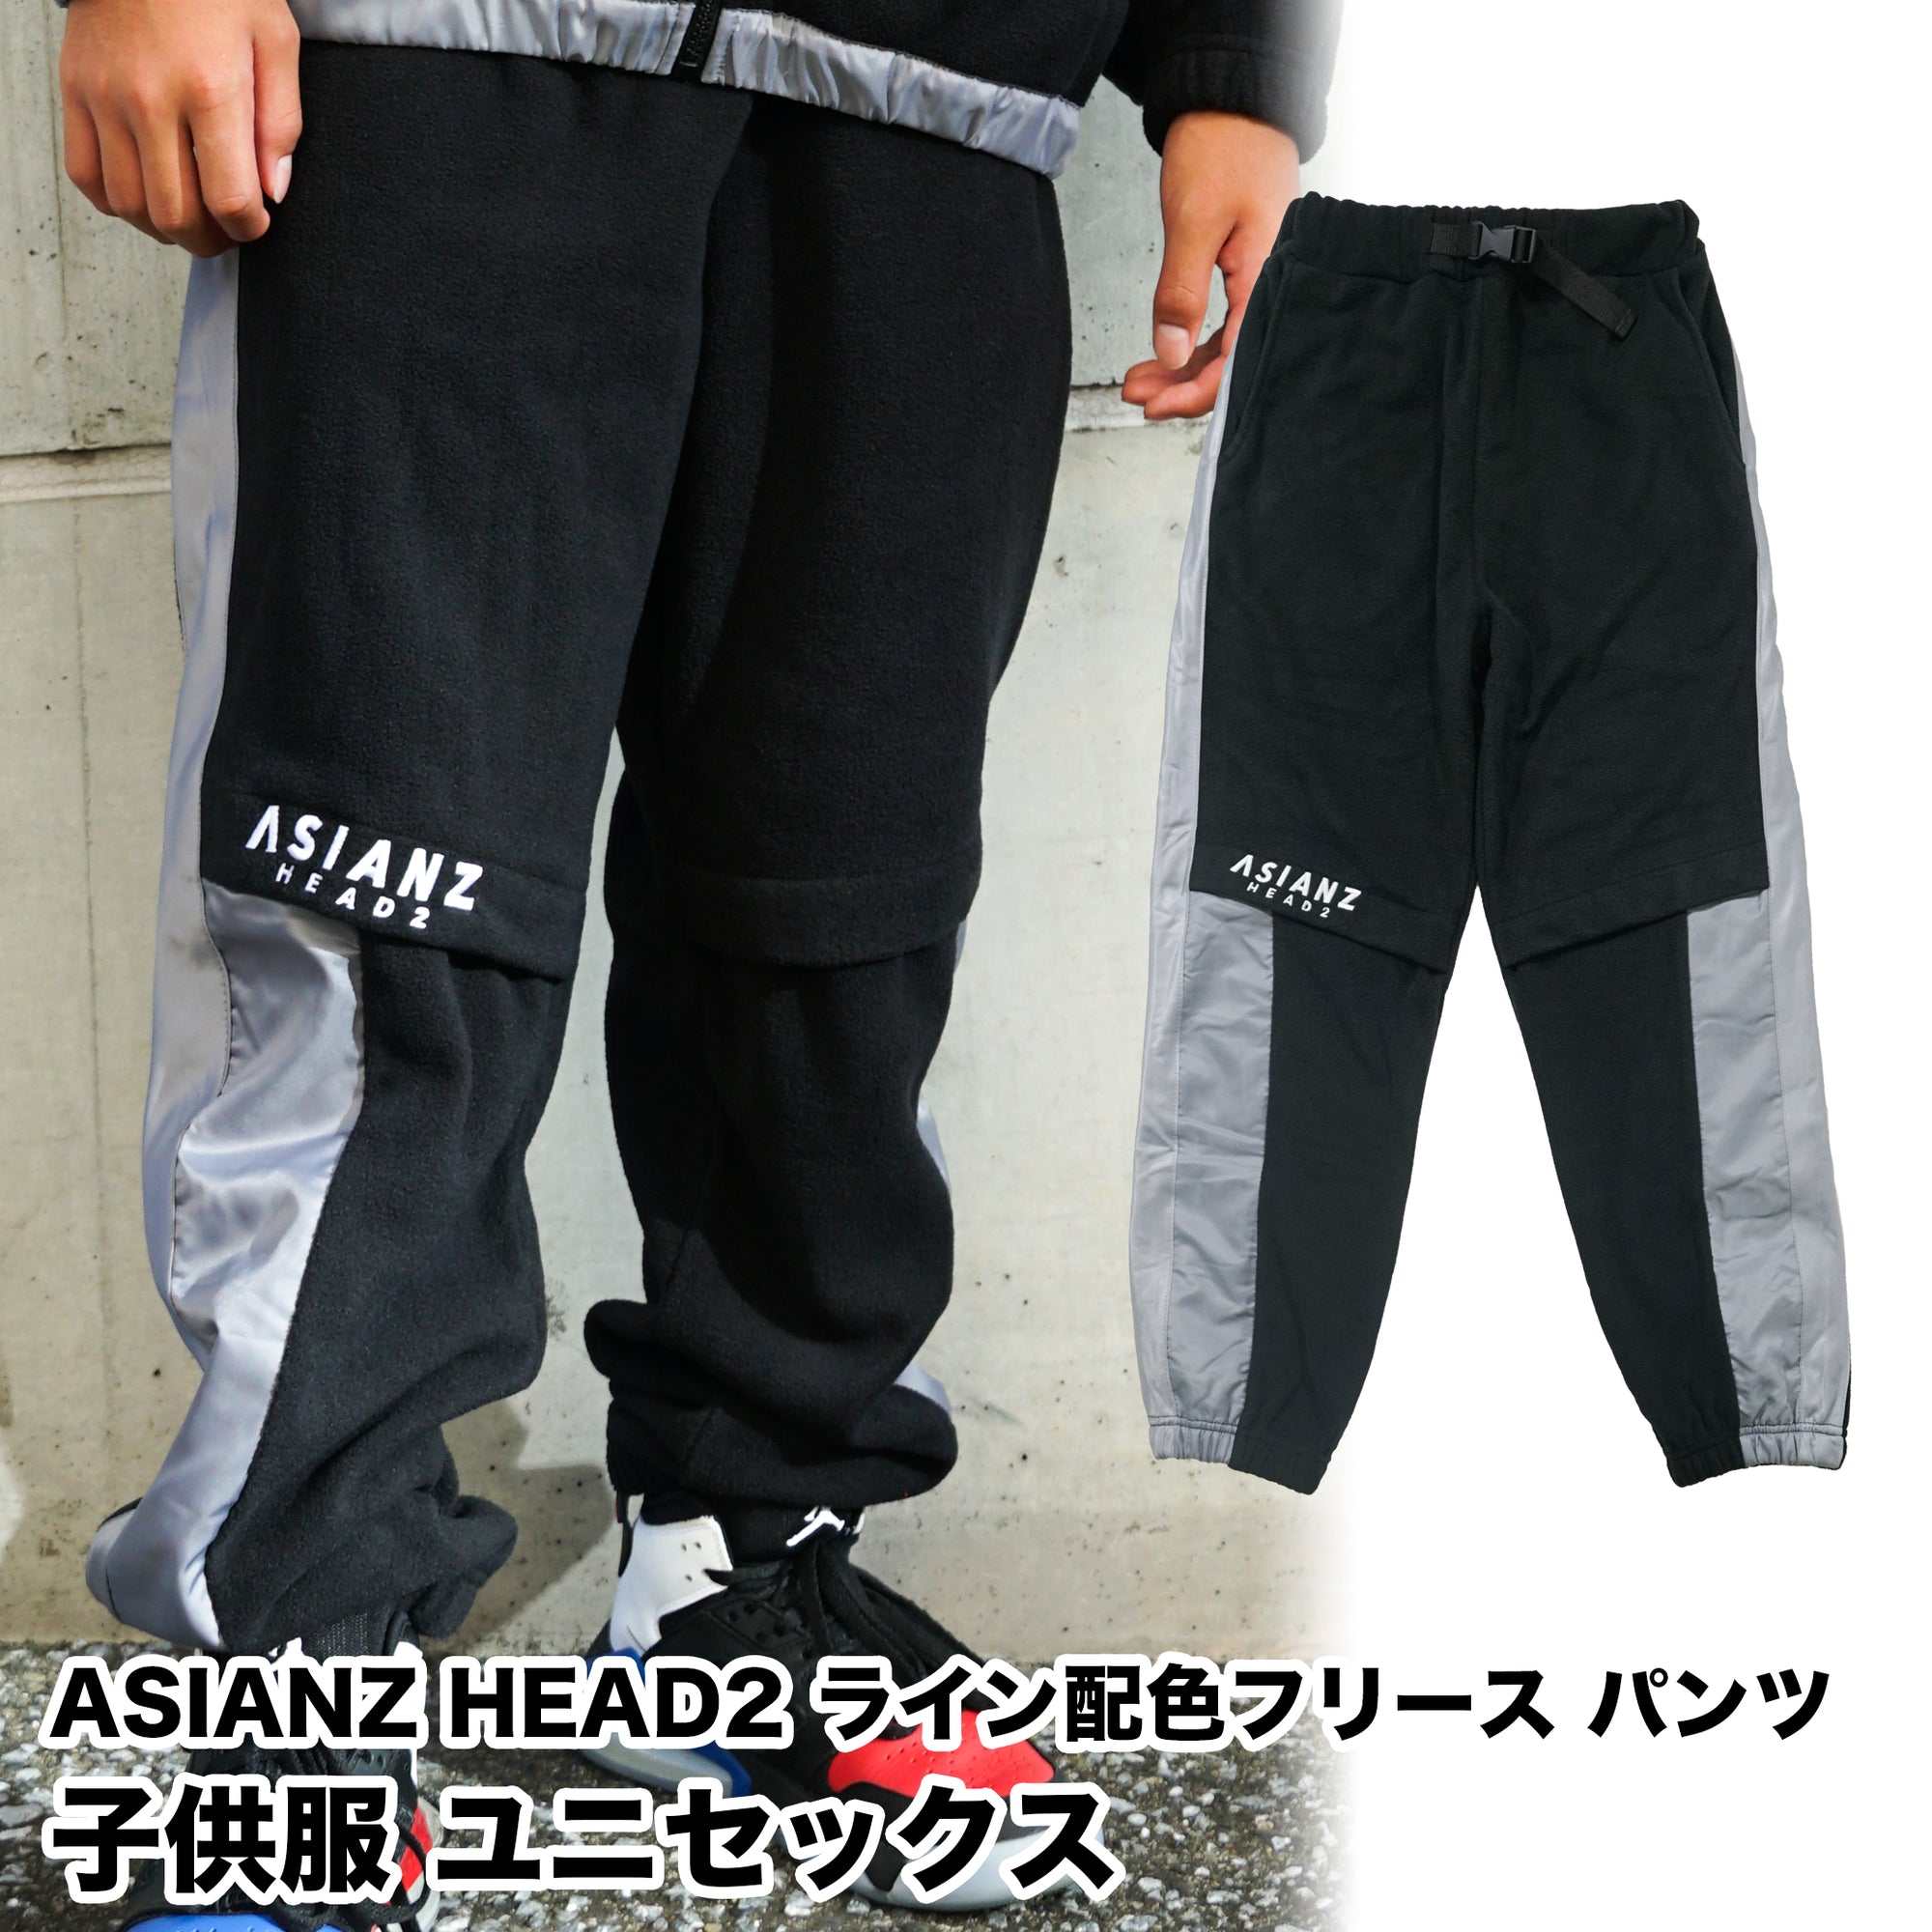 (40%オフ! セール商品)ASIANZ HEAD2 ライン配色 フリースパンツ キッズウェアー